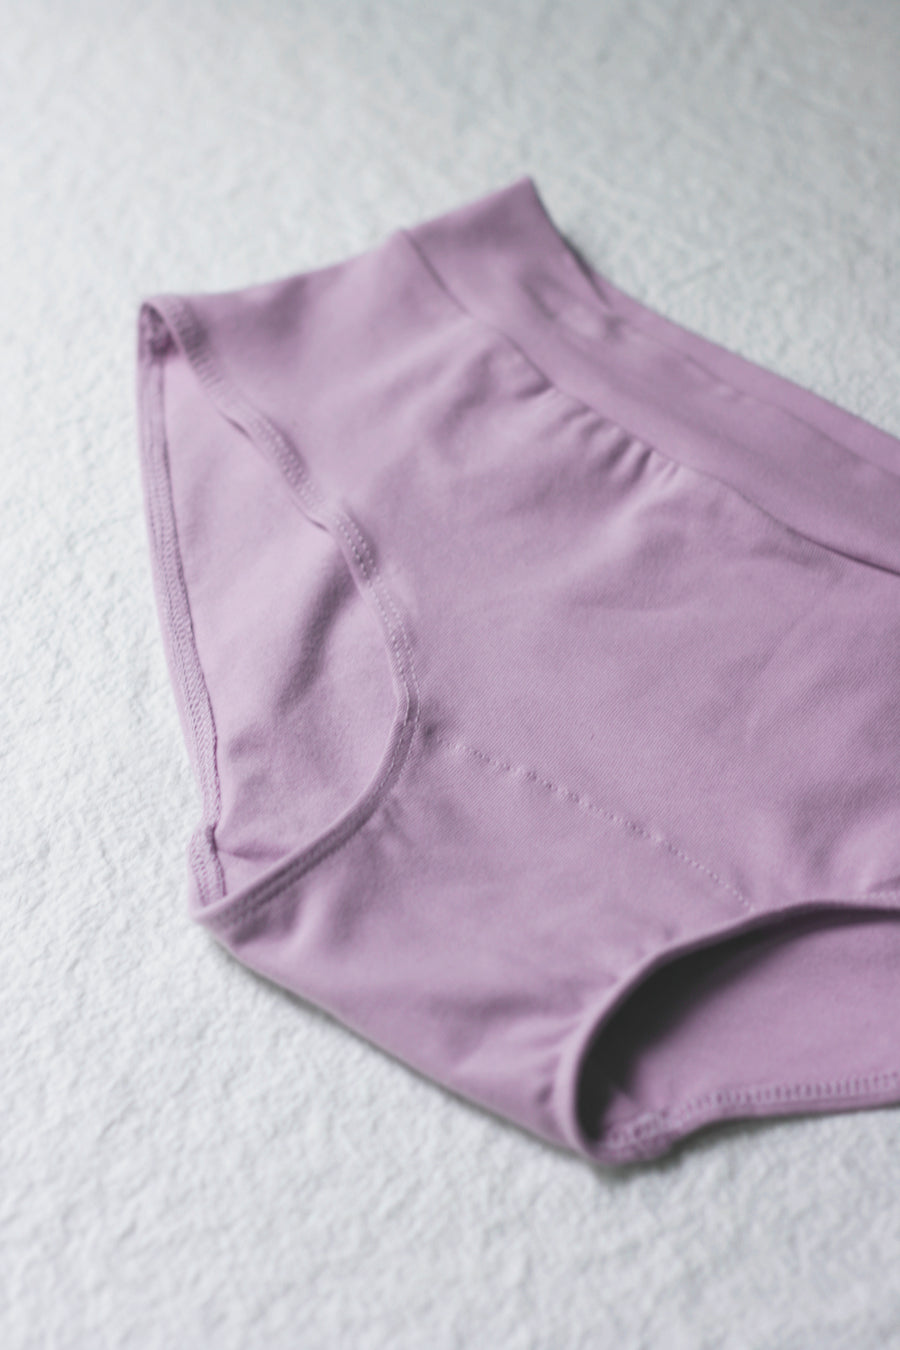 Lilac Panties 1, Painting by Atelier N N . Art Store By Nat